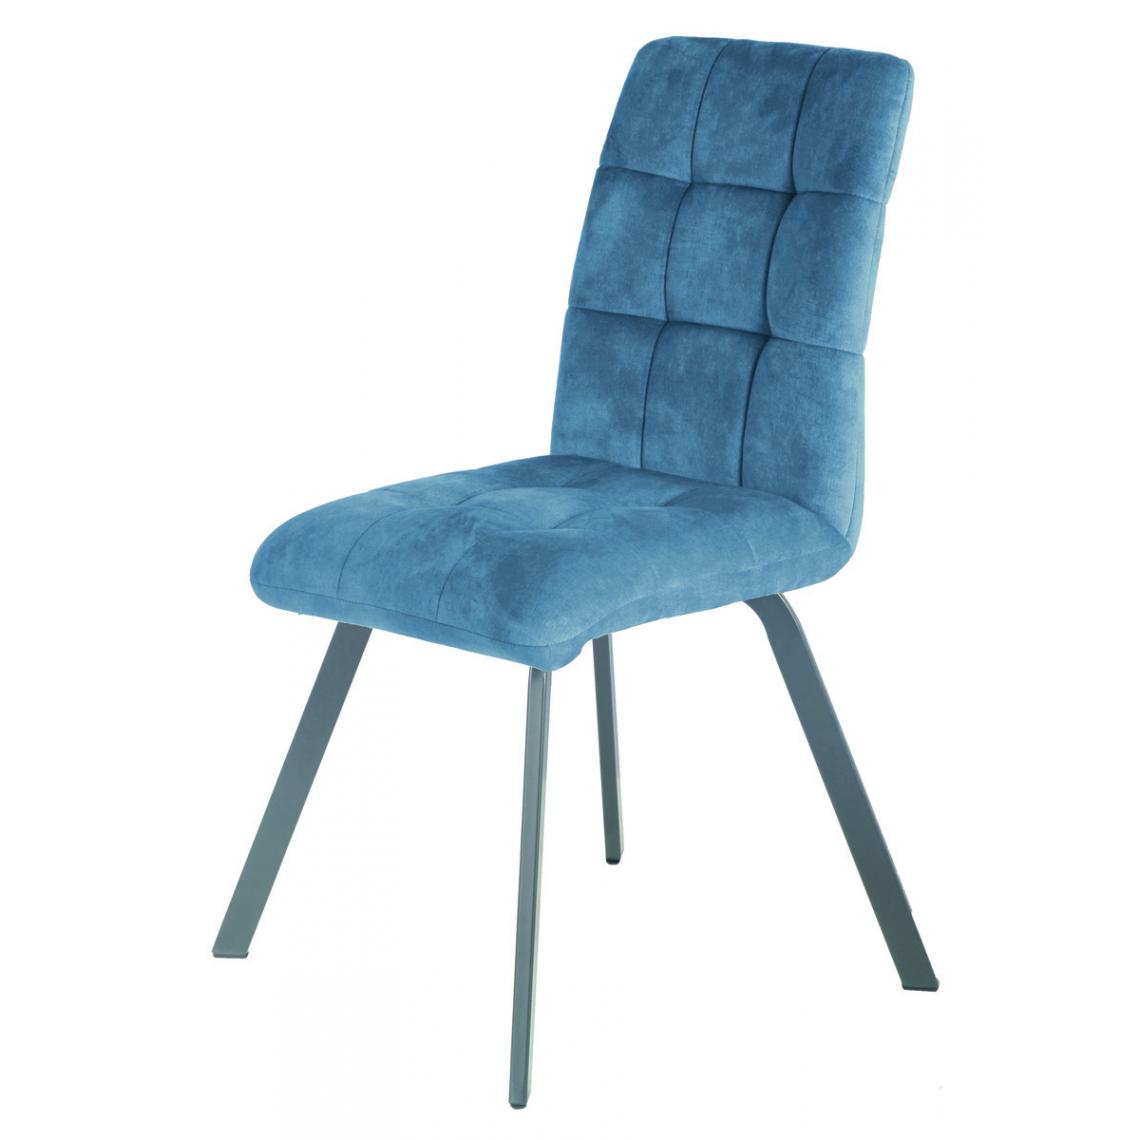 Pegane - Lot de 2 chaises en tissu / métal coloris bleu - Longueur 45 x Profondeur 62 x hauteur 89 x hauteur assise 48 cm - Chaises